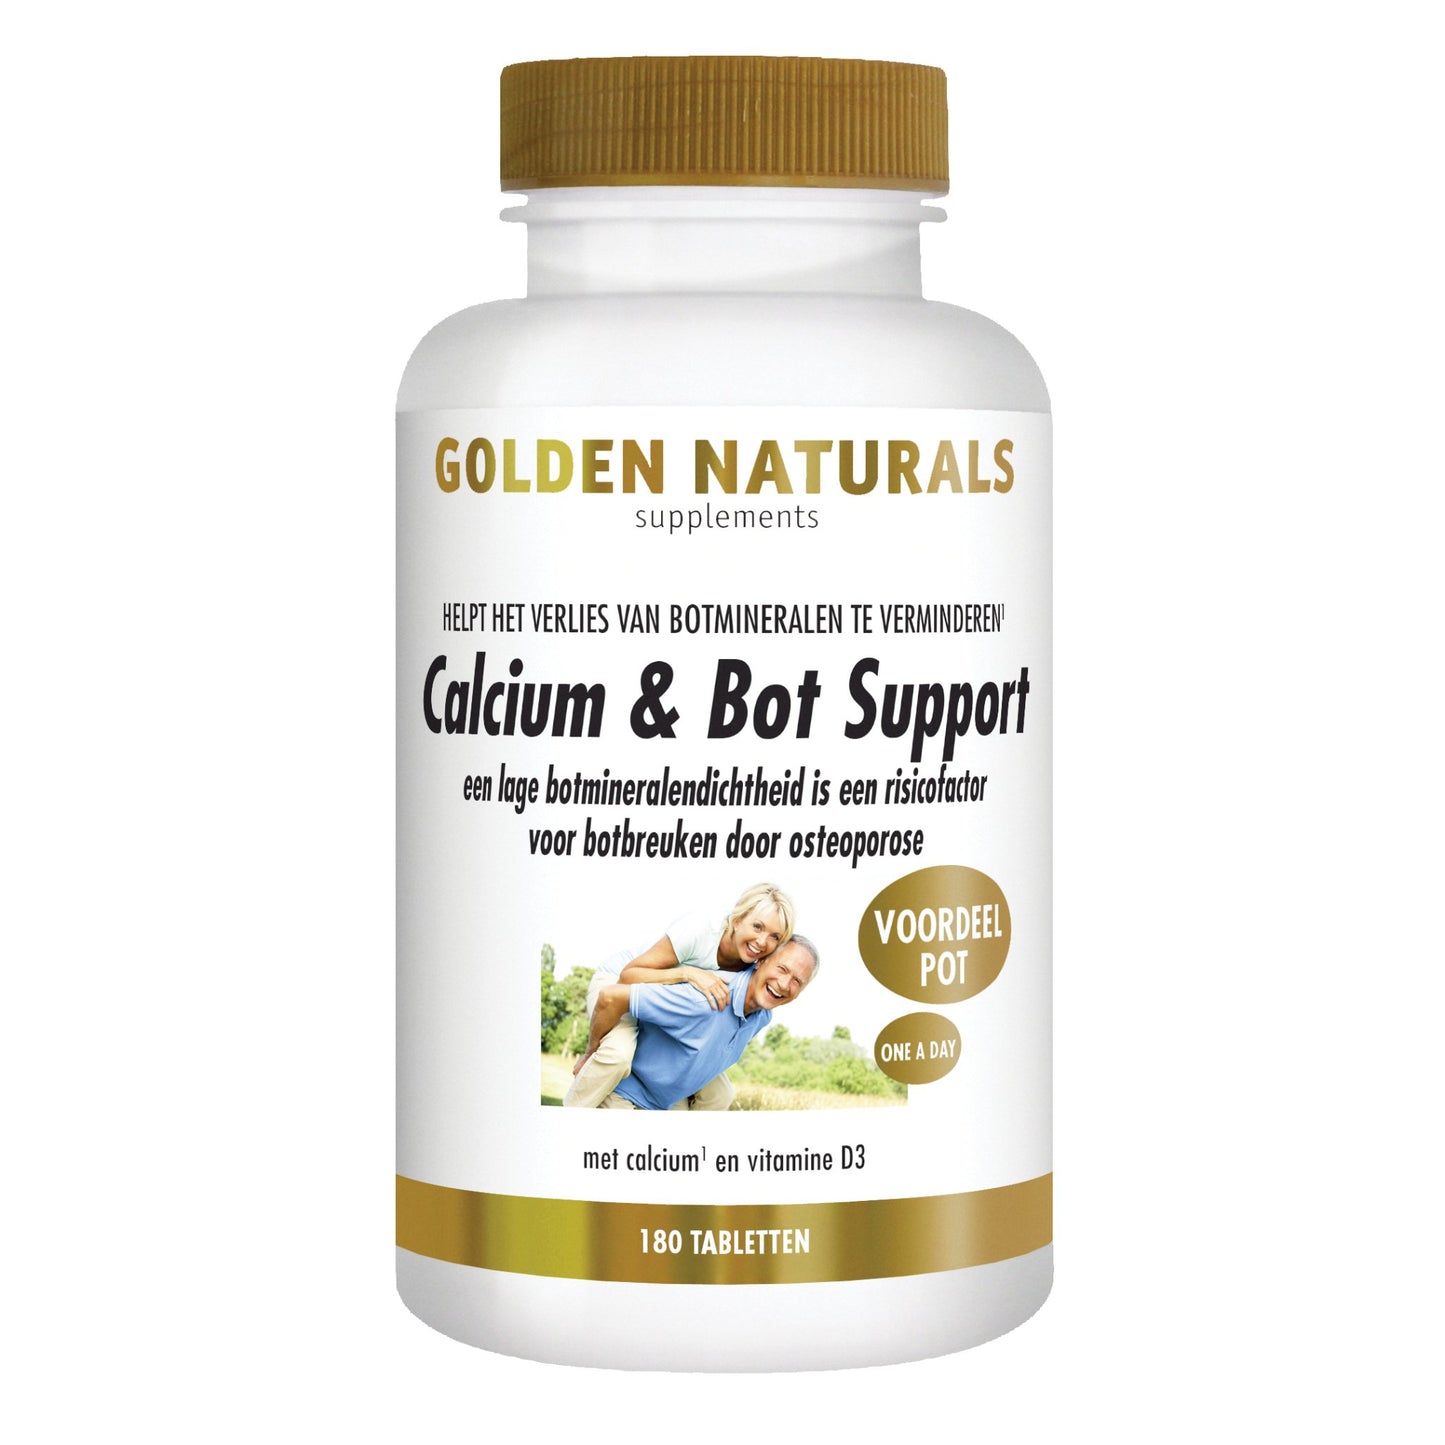 Calcium & Bot Support - 180 - vegetarische tabletten Supplement Golden Naturals   